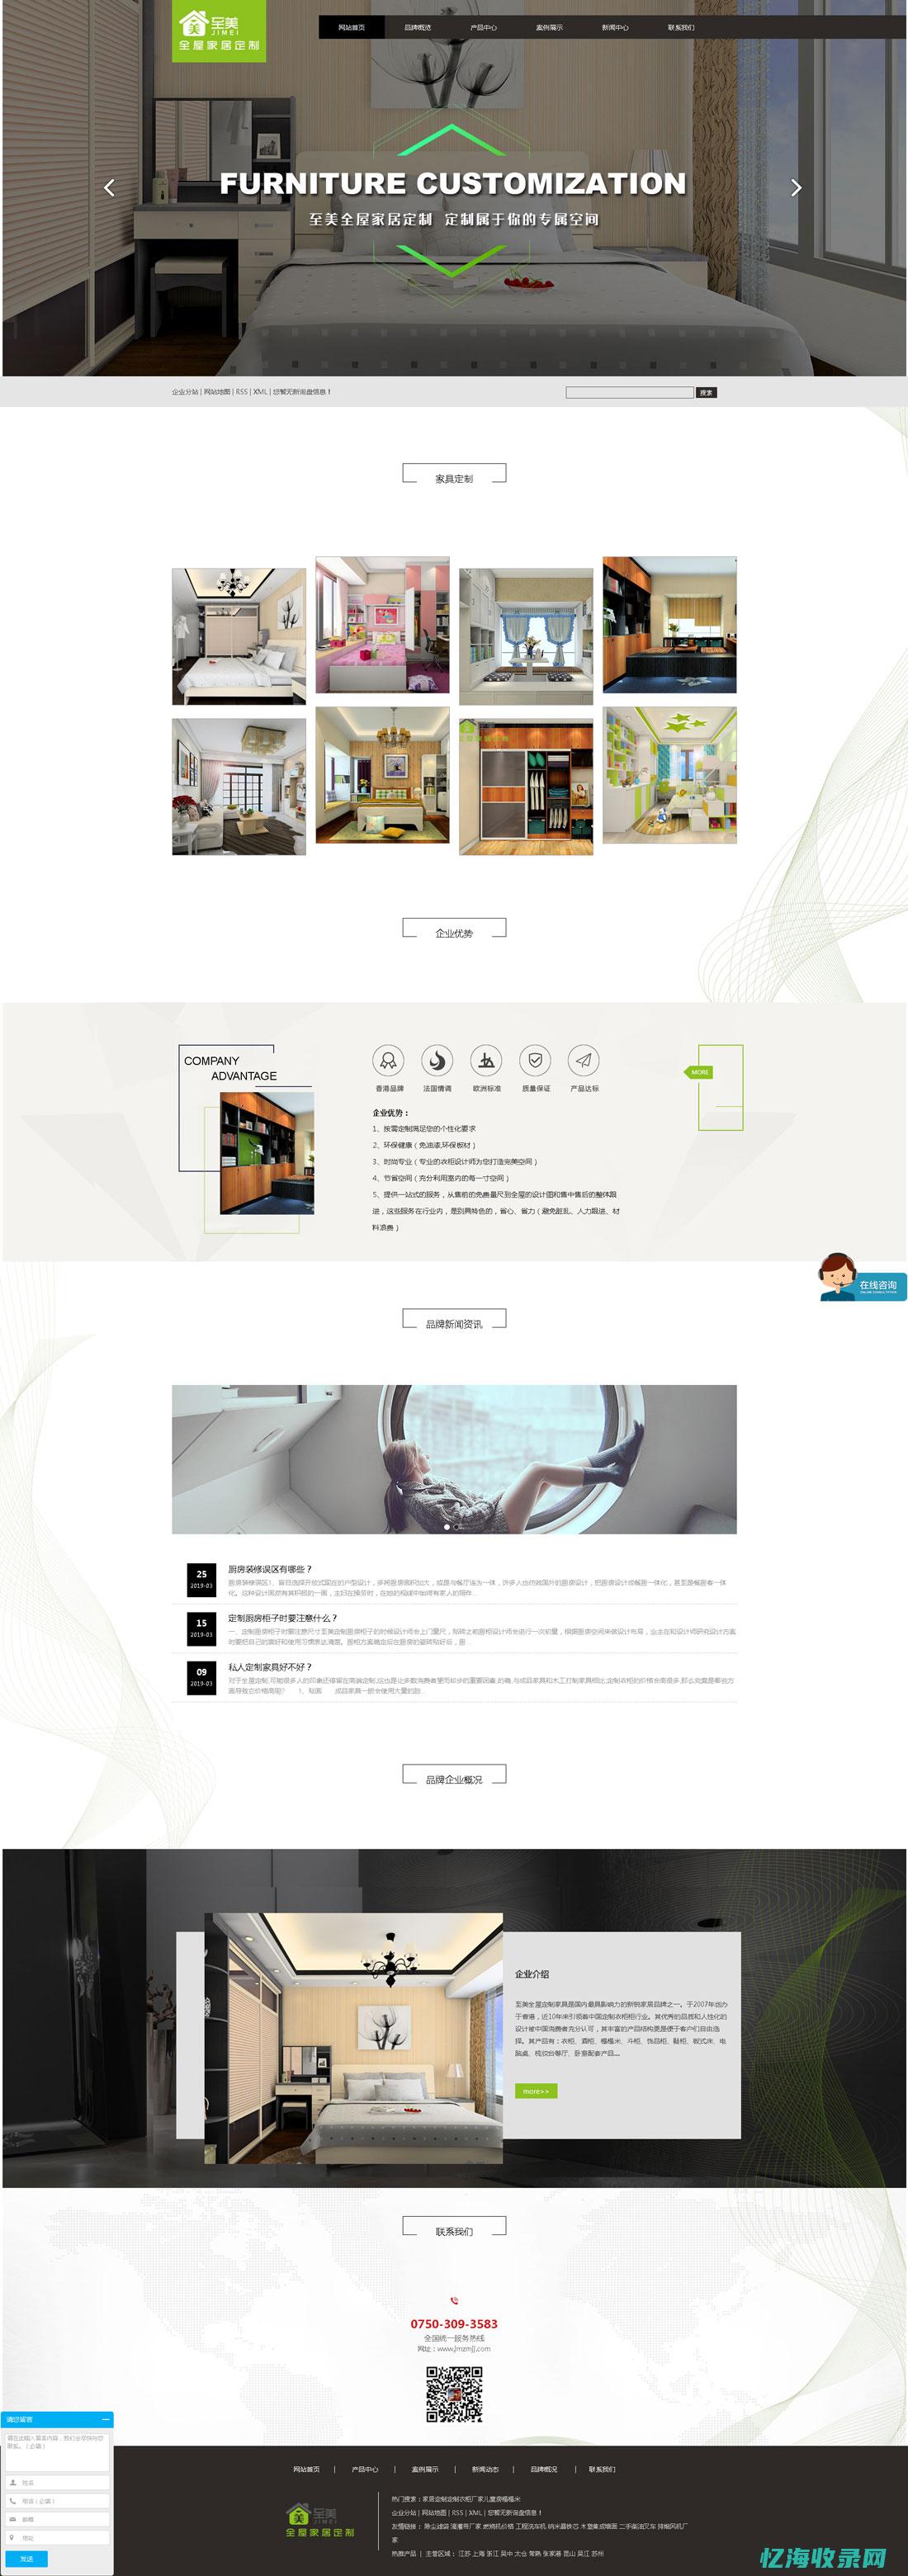 江门网站制作：打造专业、创新的在线品牌展示平台 (江门网站制作多少钱)